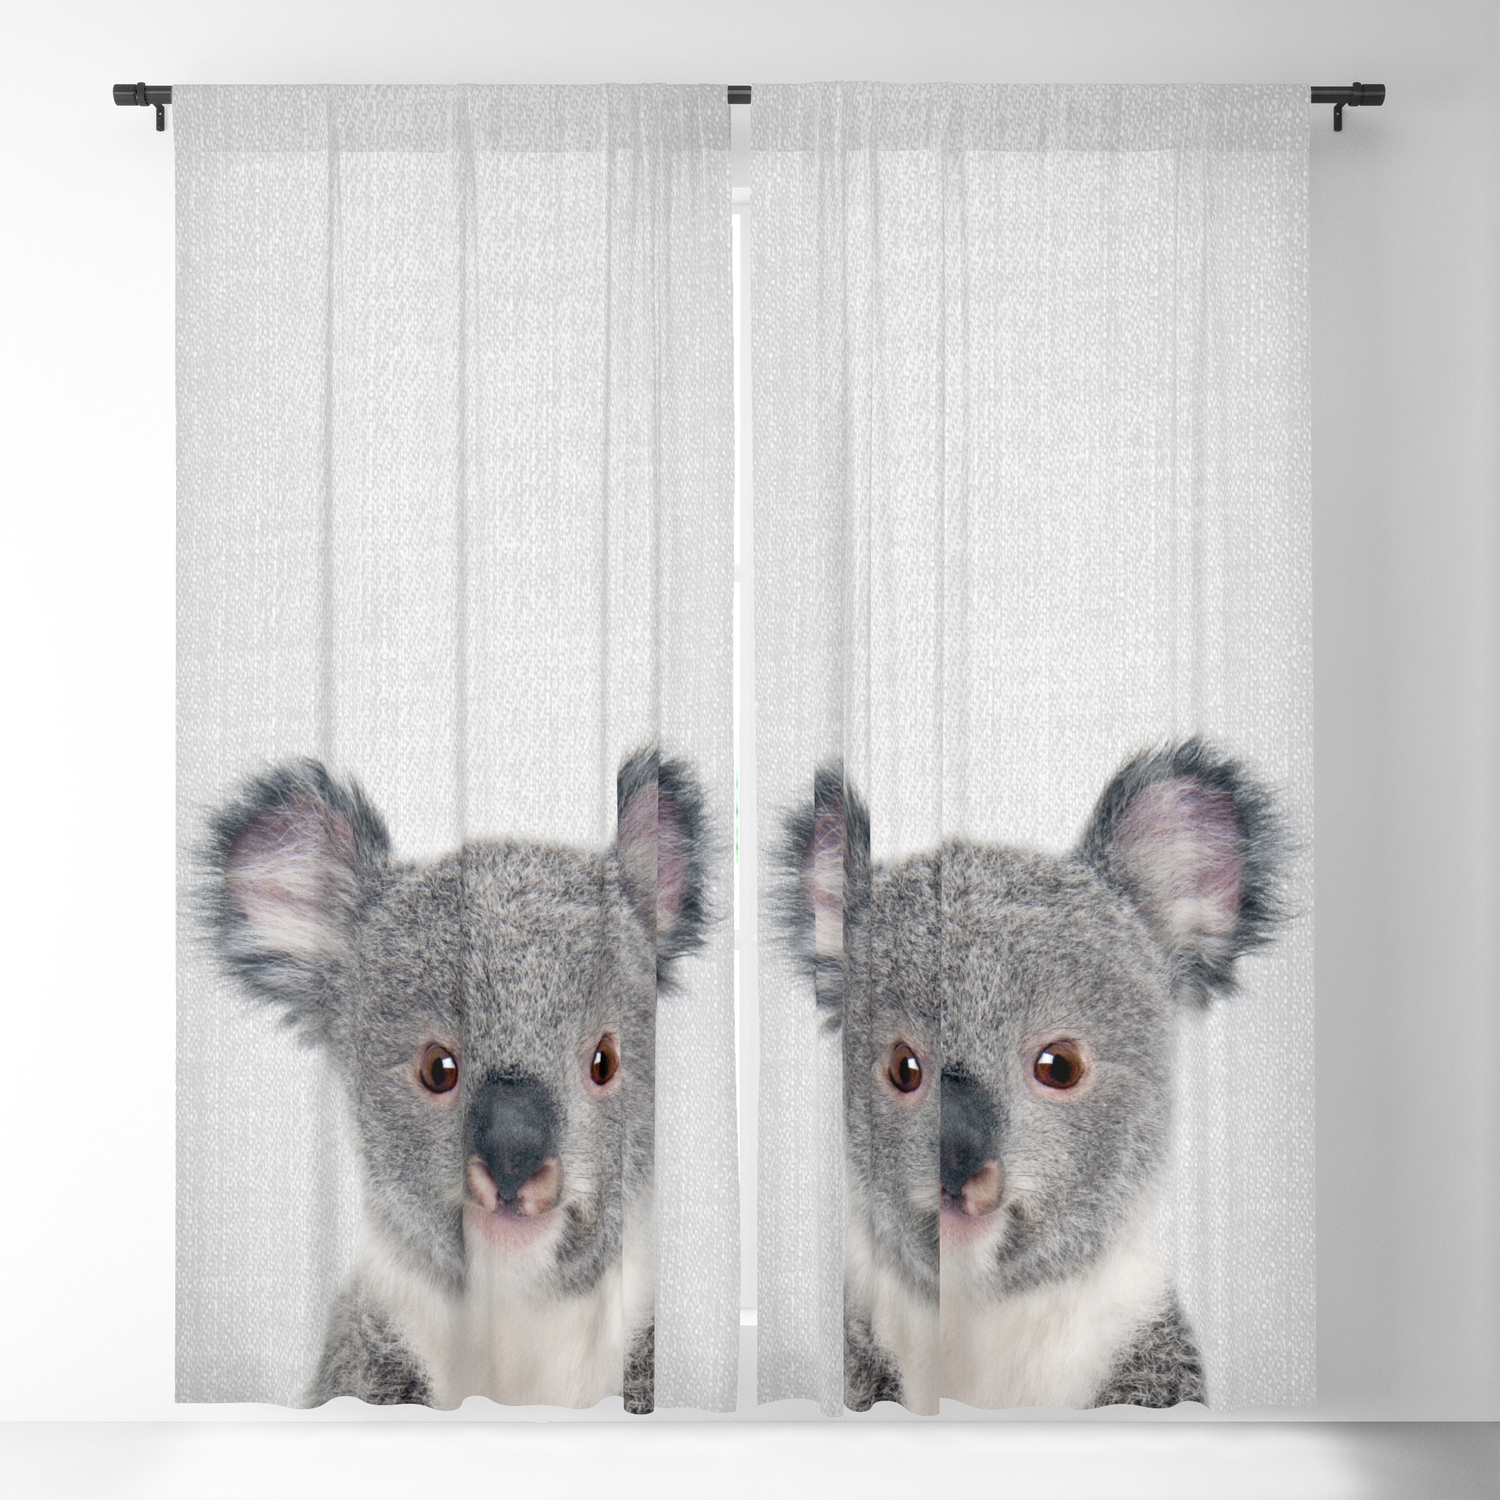 Koala Baby Curtains - KibrisPDR